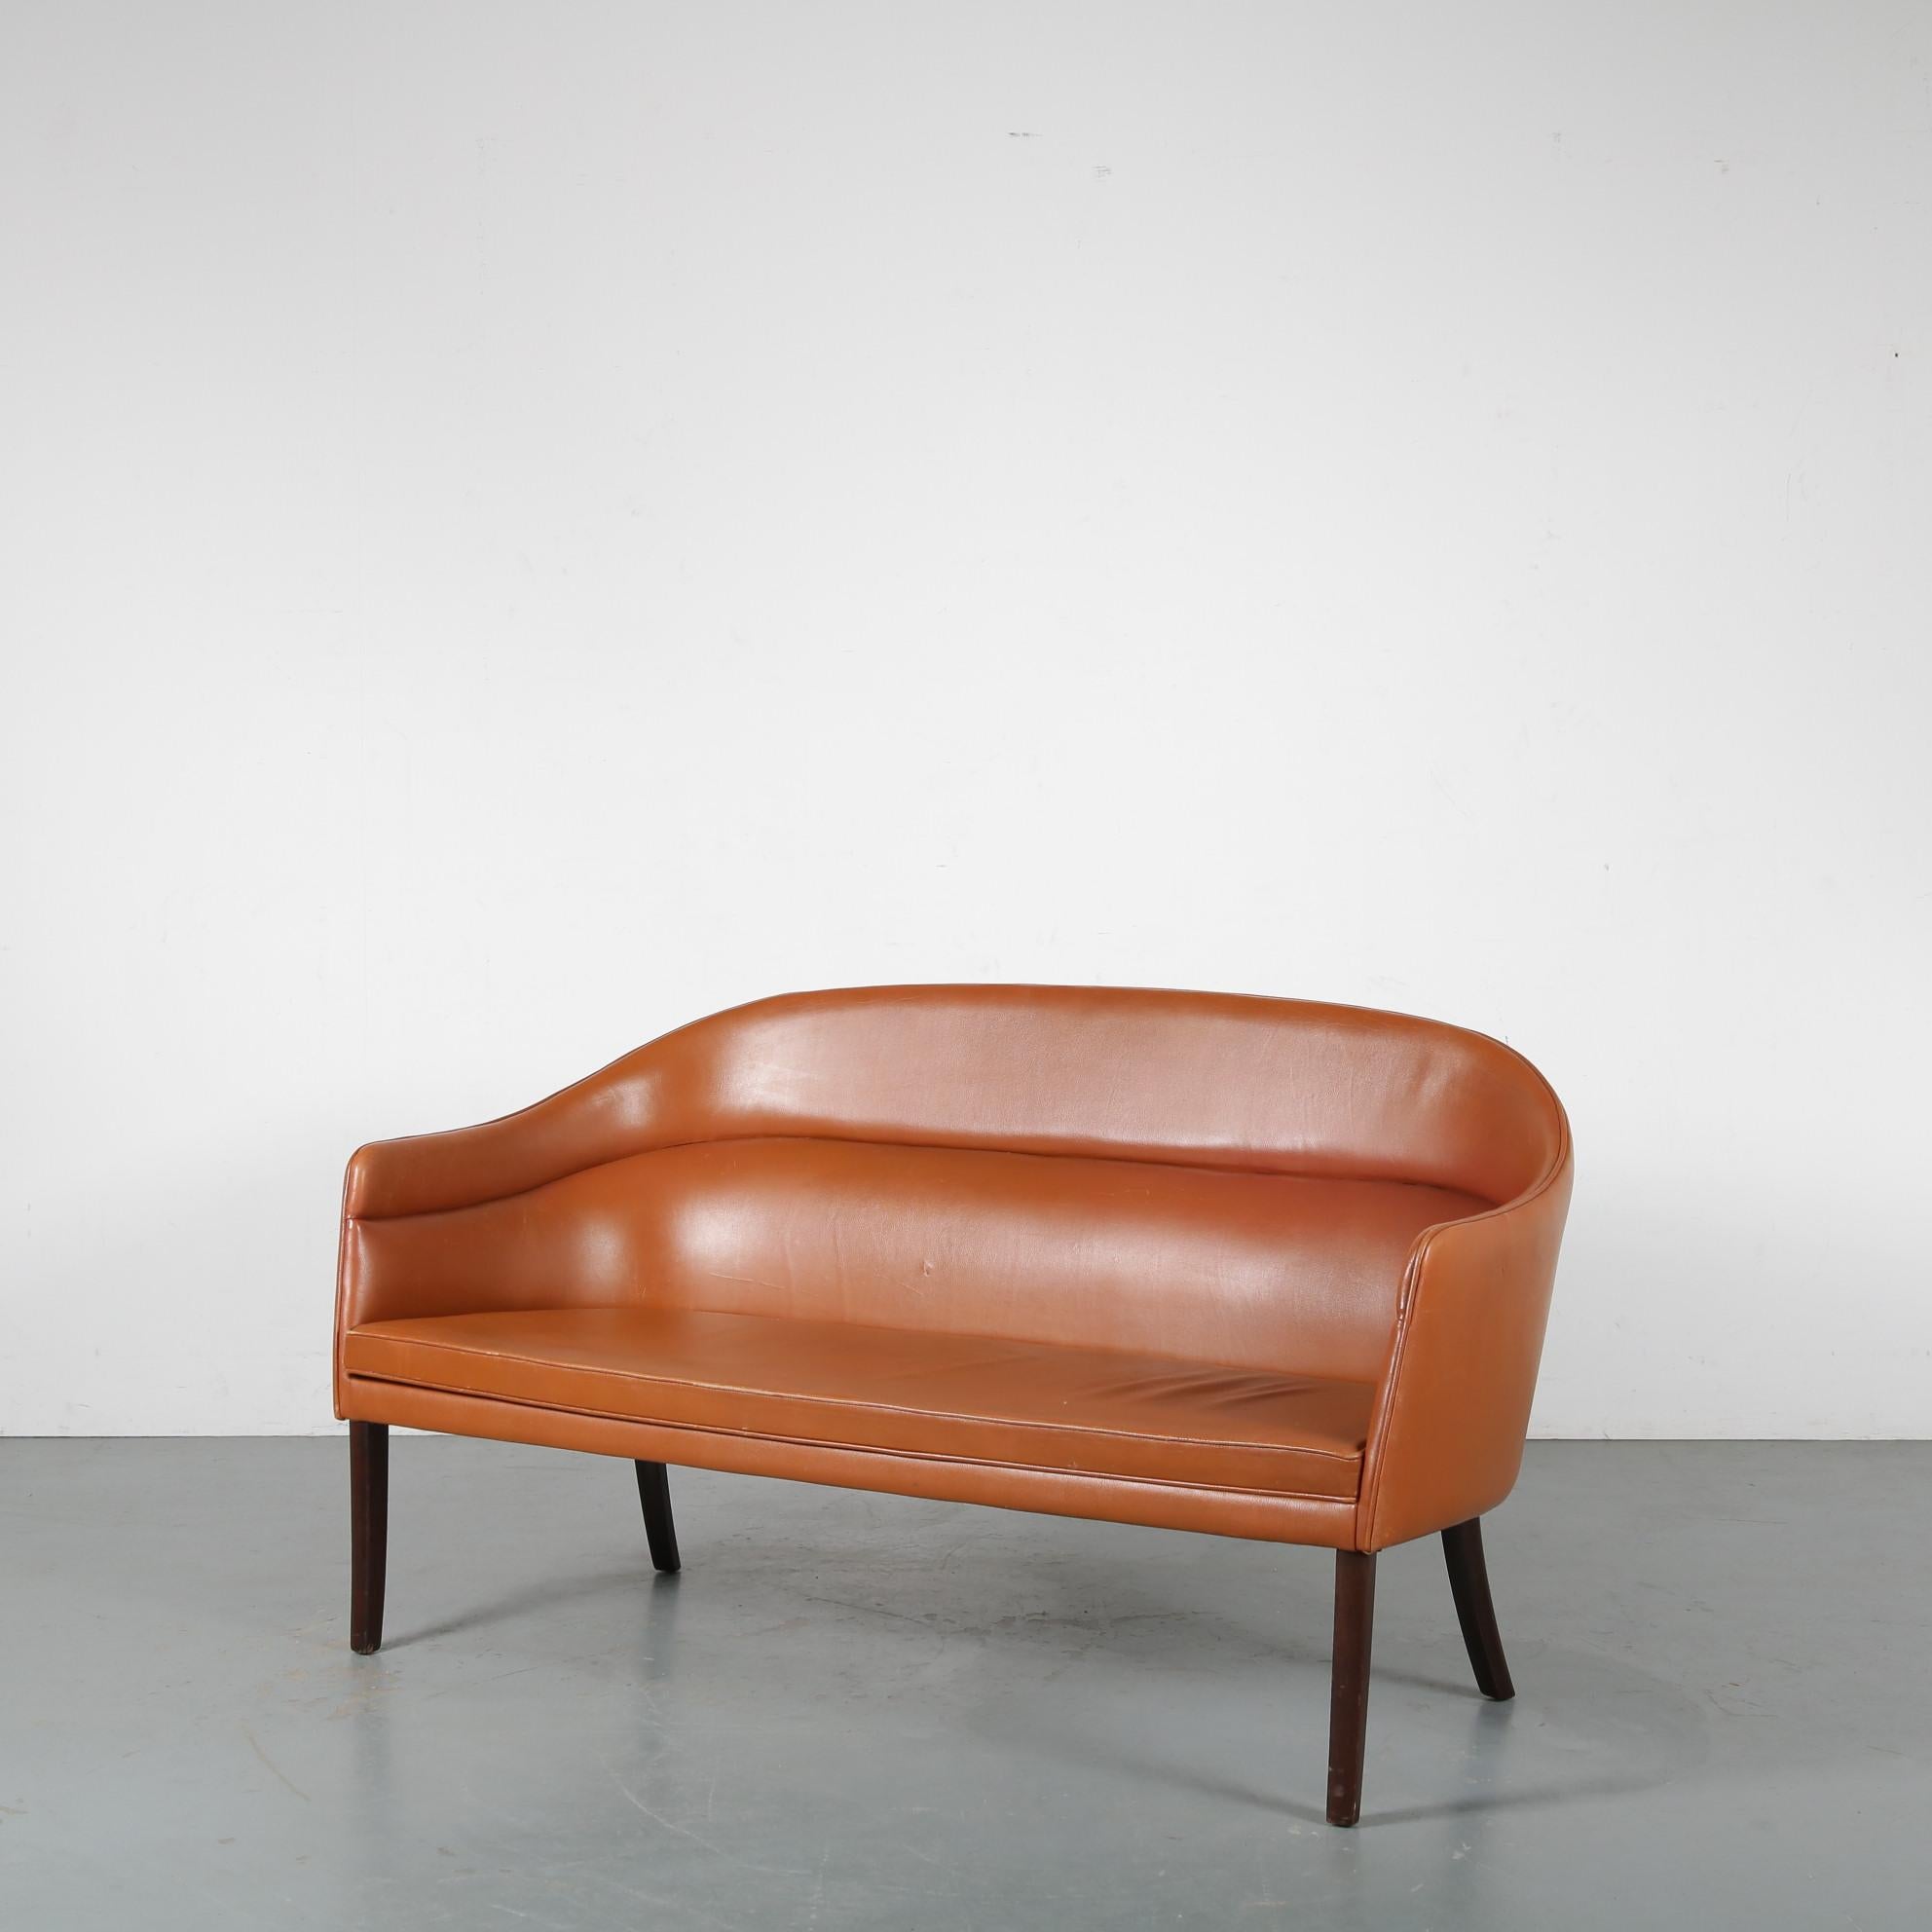 Un remarquable et très rare canapé 2 places conçu par Ole Wanscher, fabriqué par J. Jeppesen au Danemark vers 1950.

Cette pièce impressionnante est vraiment bien faite par l'un des plus grands designers danois. Il est doté d'élégants et hauts